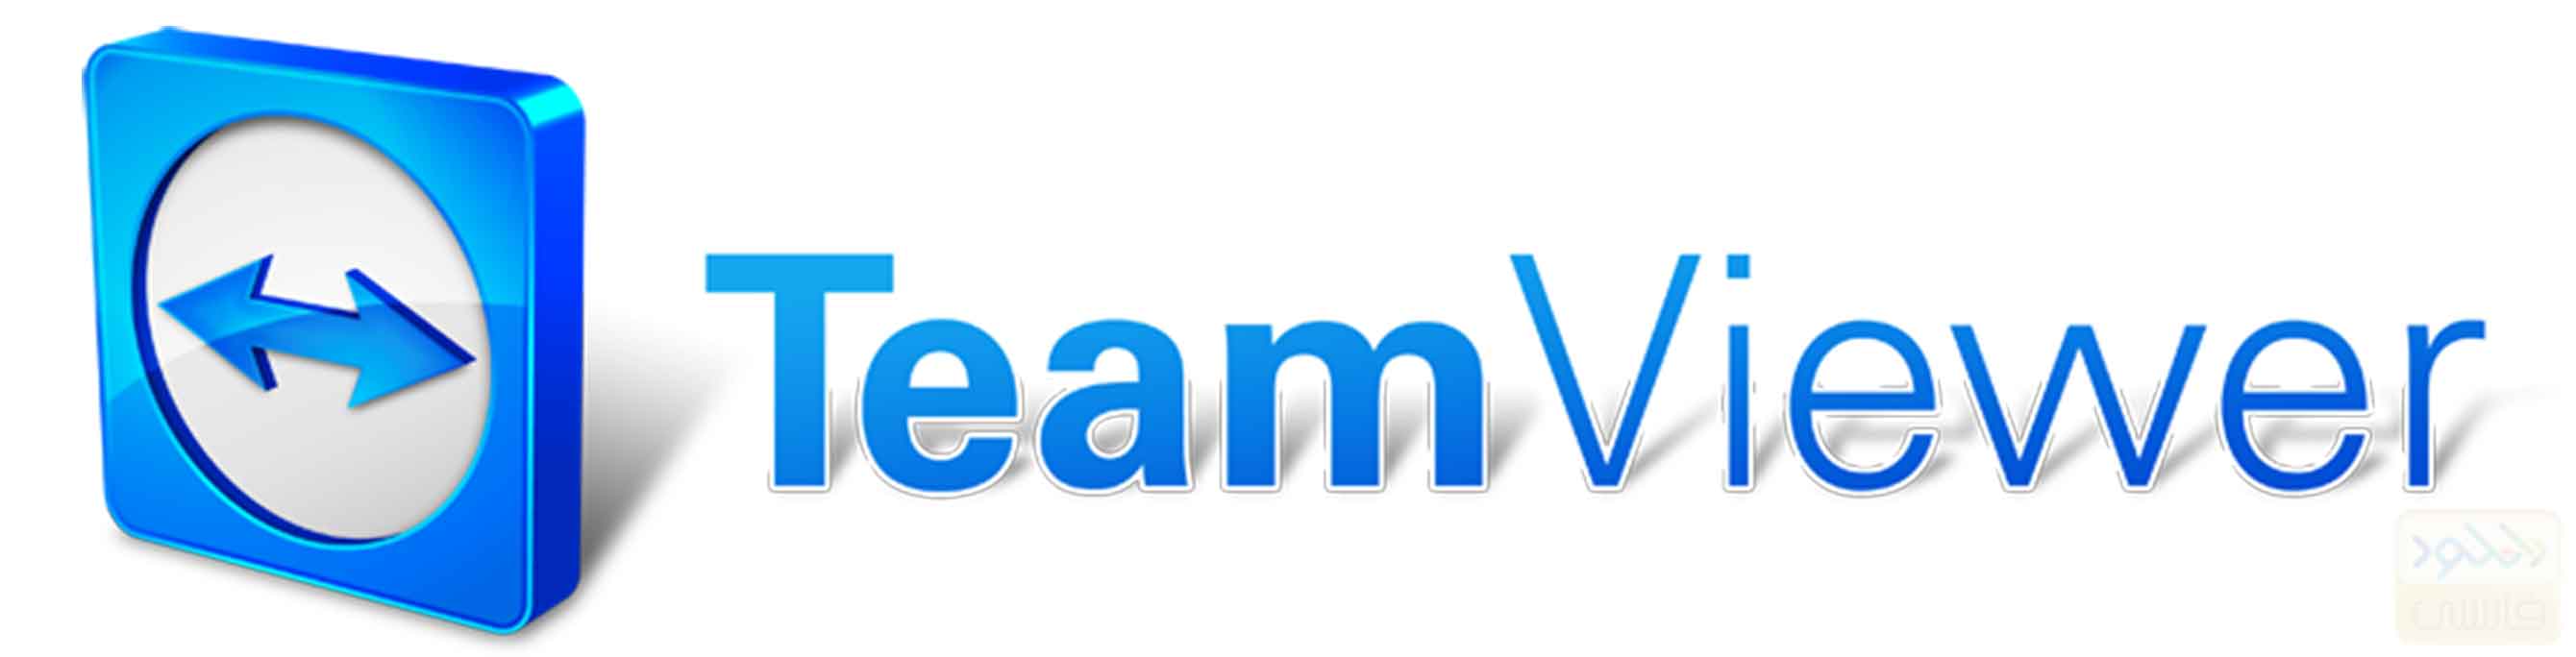 دانلود نرم افزار TeamViewer 11.0.5173 برای اندروید